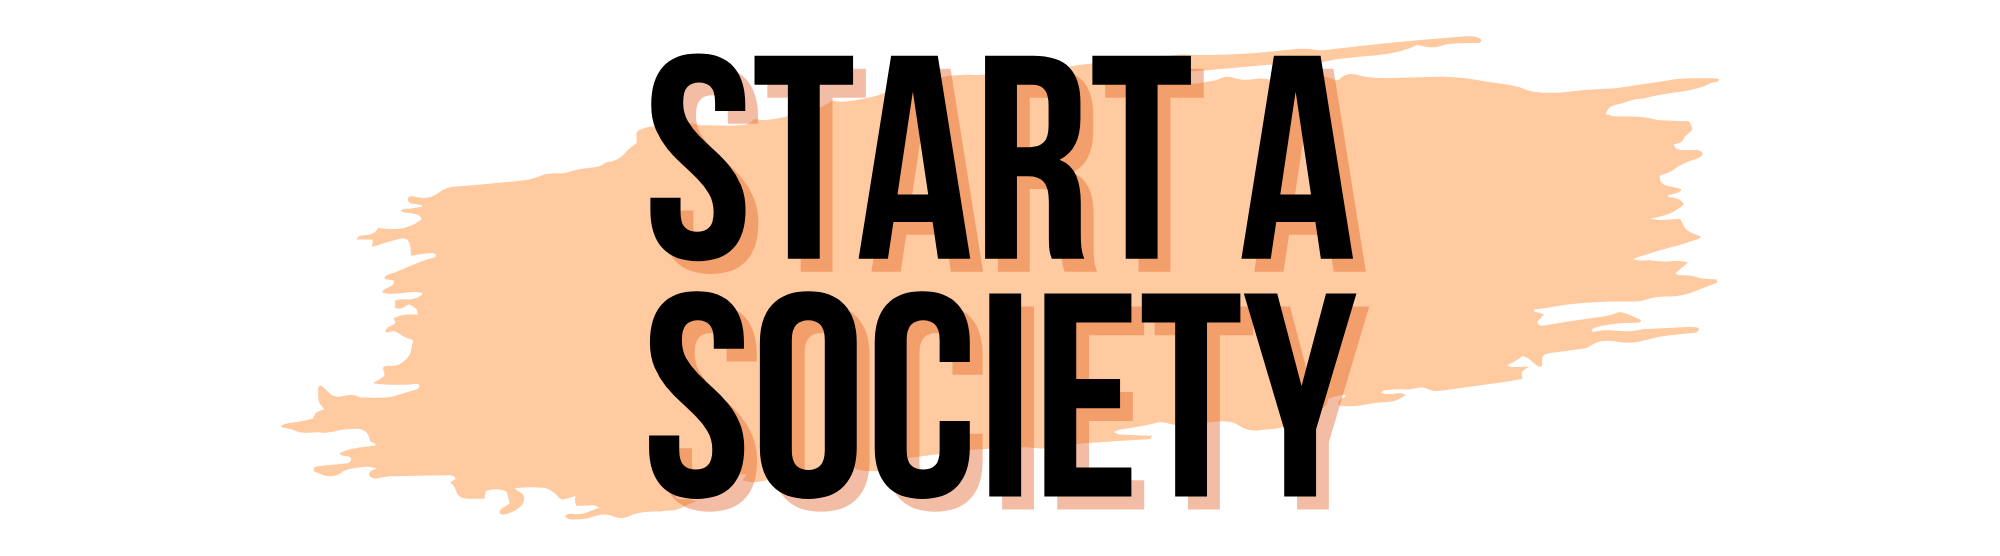 Start a society